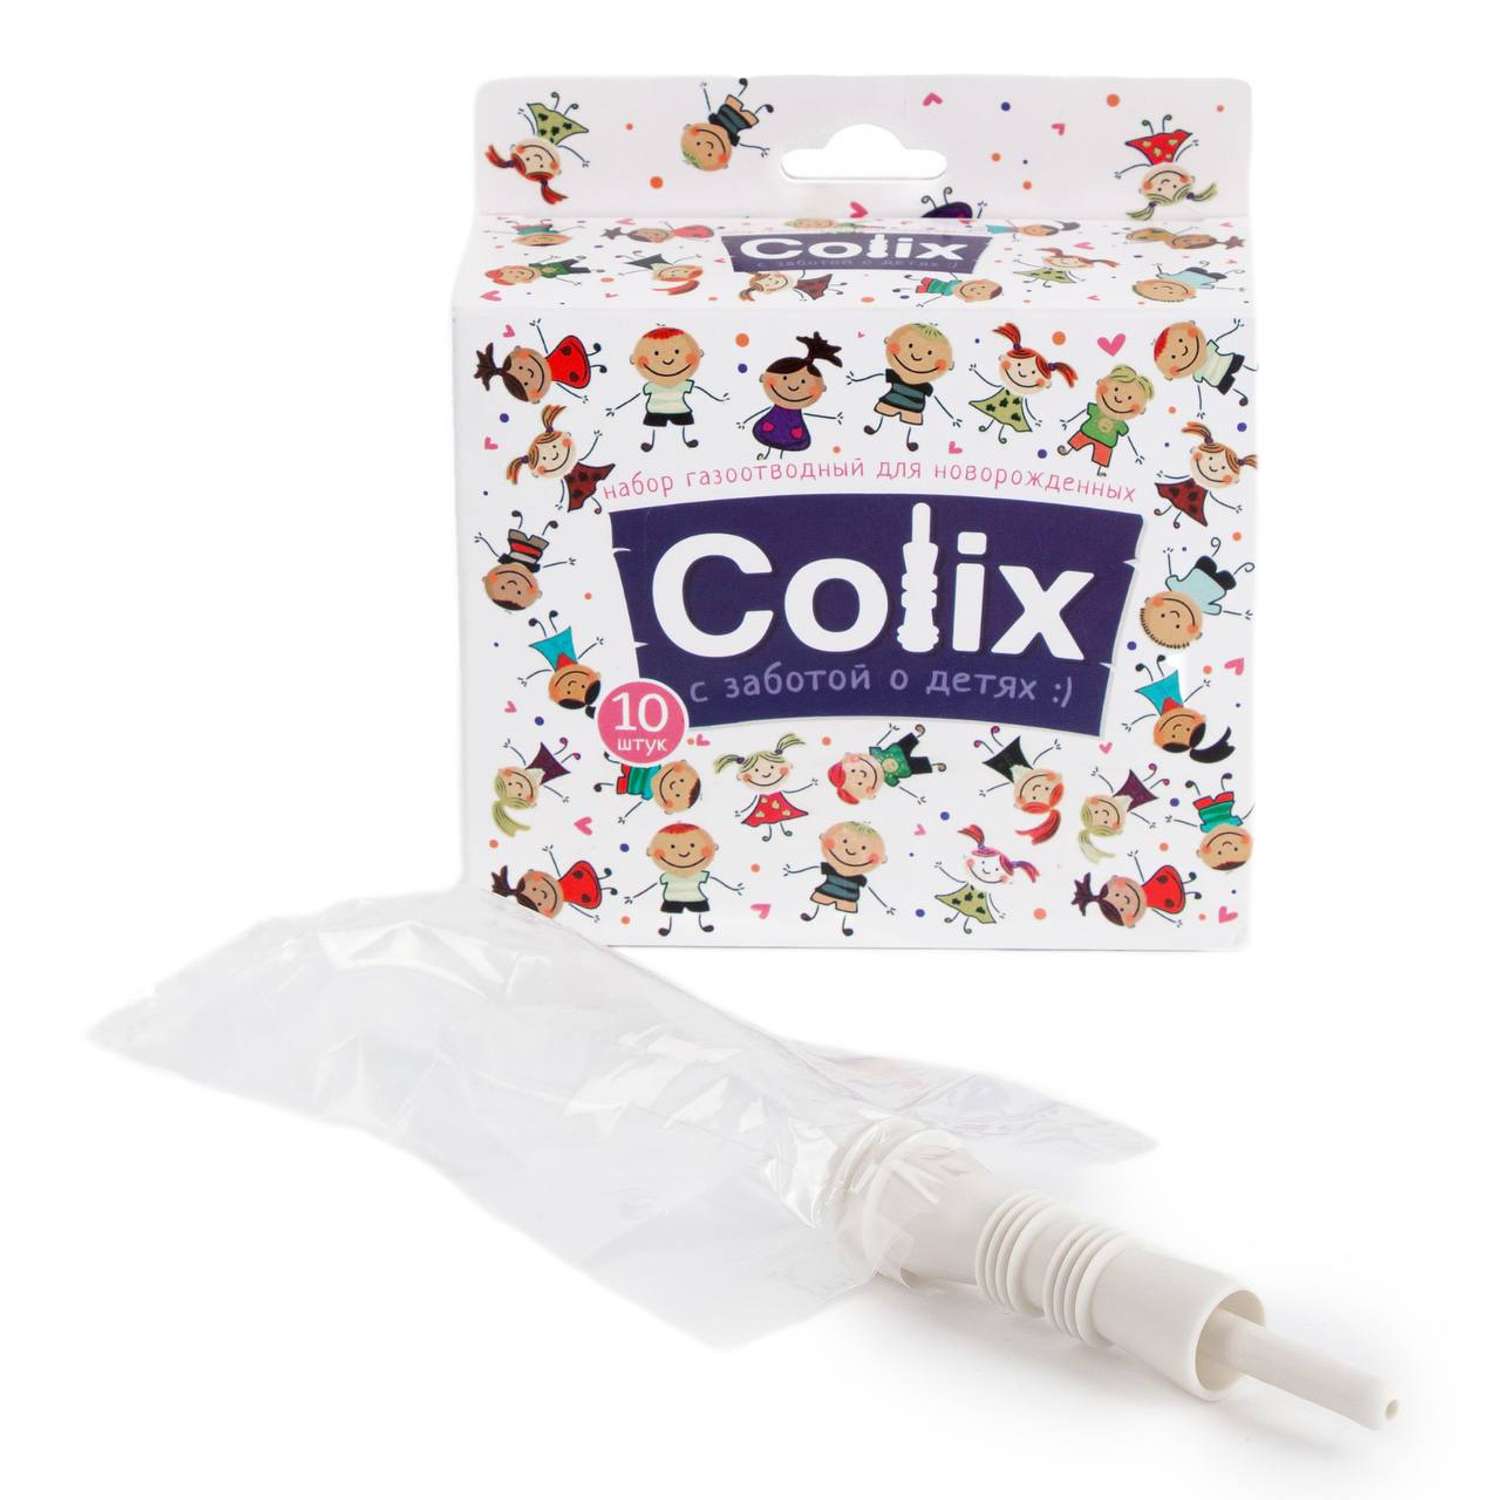 Трубка газоотводная COLIX для новорожденных катетер ректальный с пакетиком 10шт - фото 1